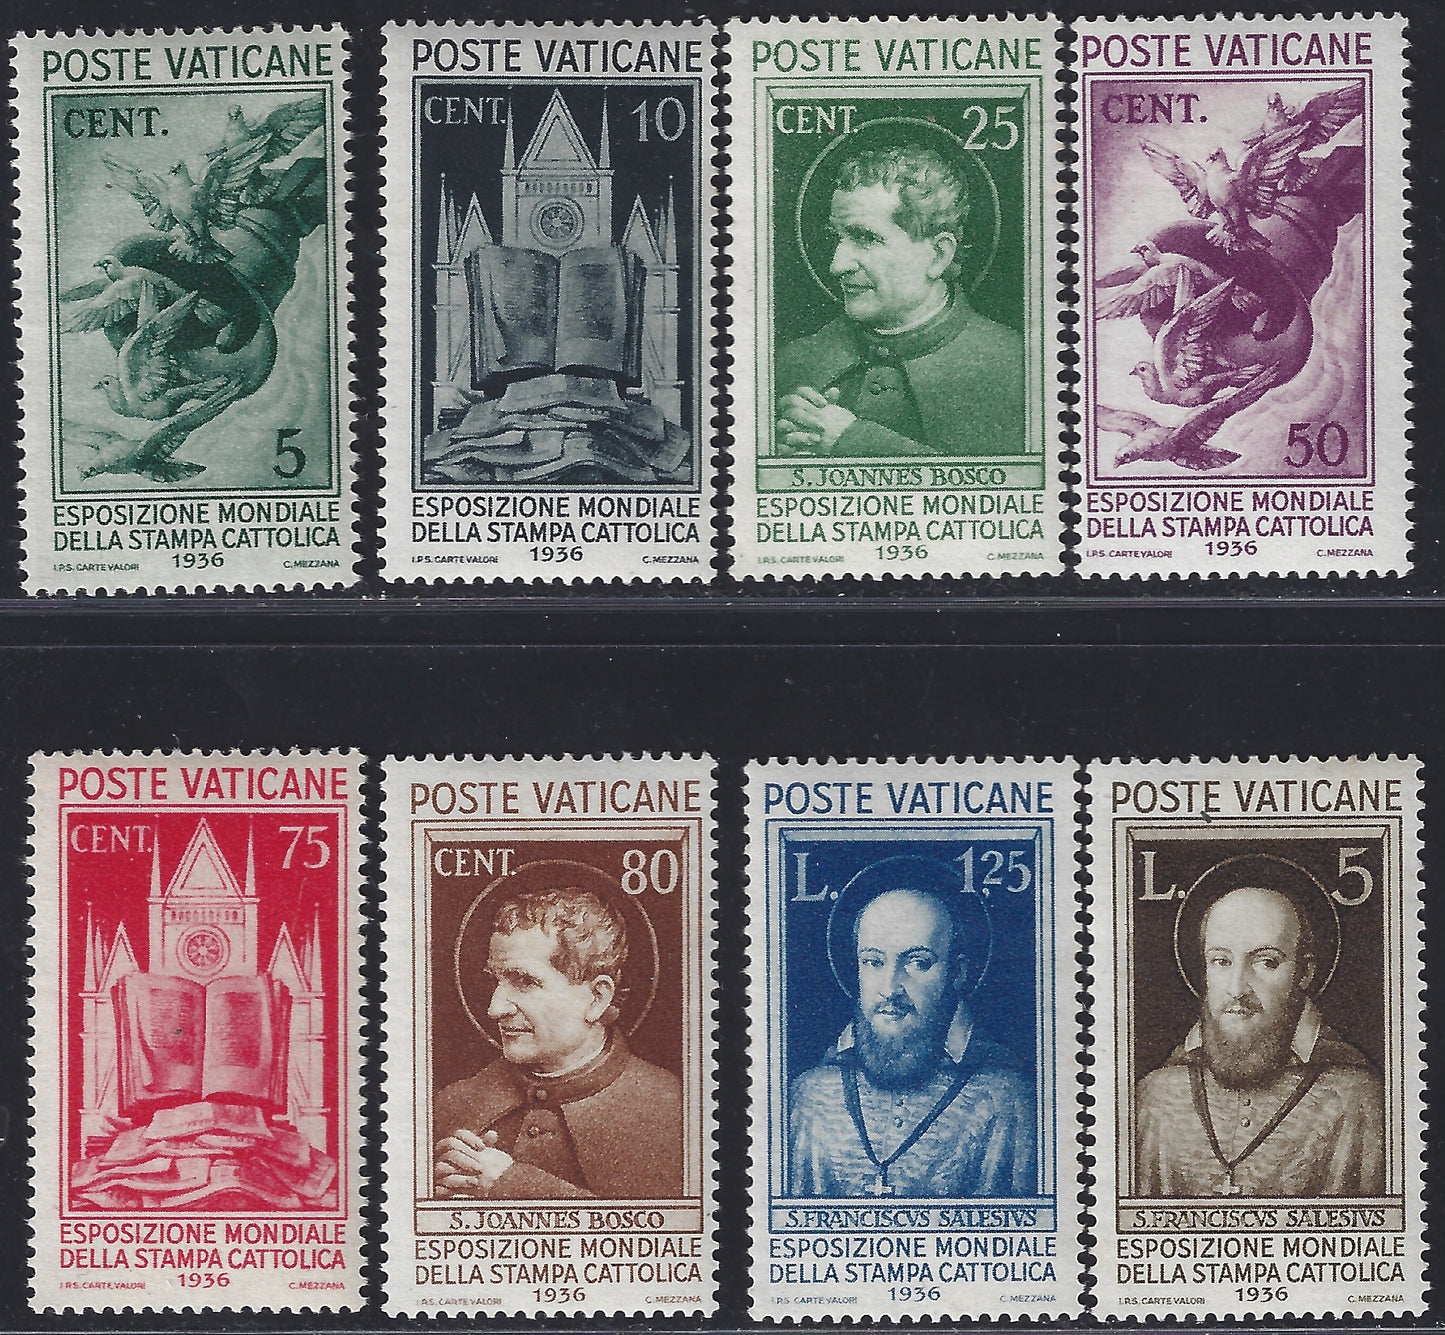 Vat15 - 1936 - Esposizione mondiale della stampa cattolica, serie di otto valori nuova con gomma integra (47/54)